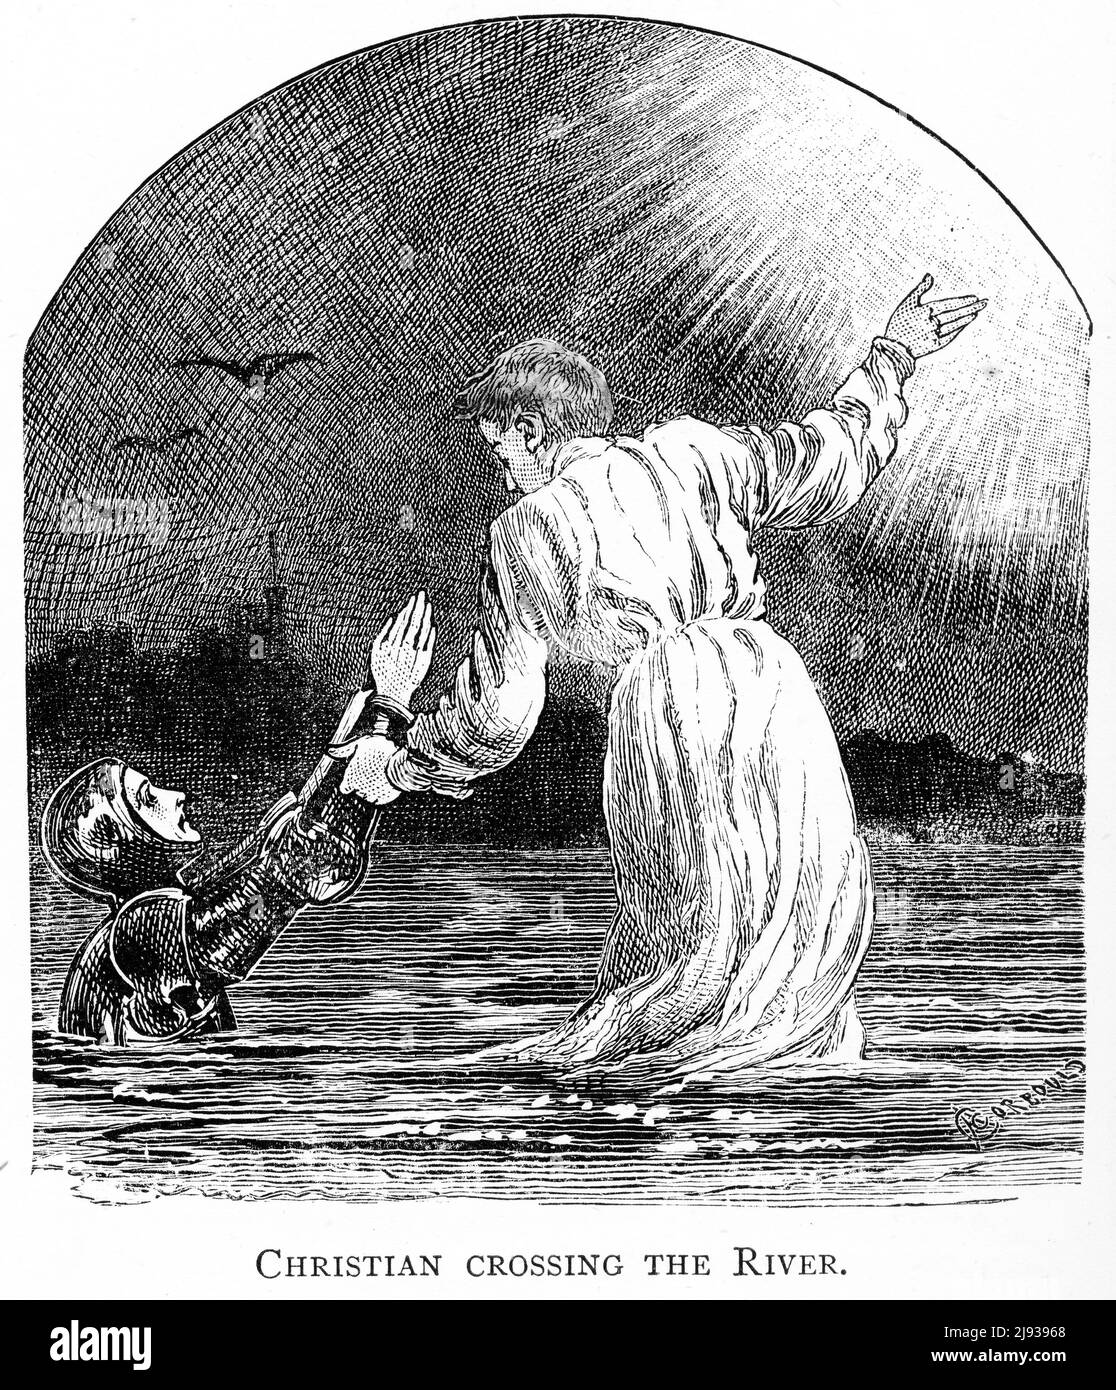 Gravure de Christian traversant le fleuve de la mort, une des dernières scènes dans le progrès de Pilgrim par John Bunyan Banque D'Images